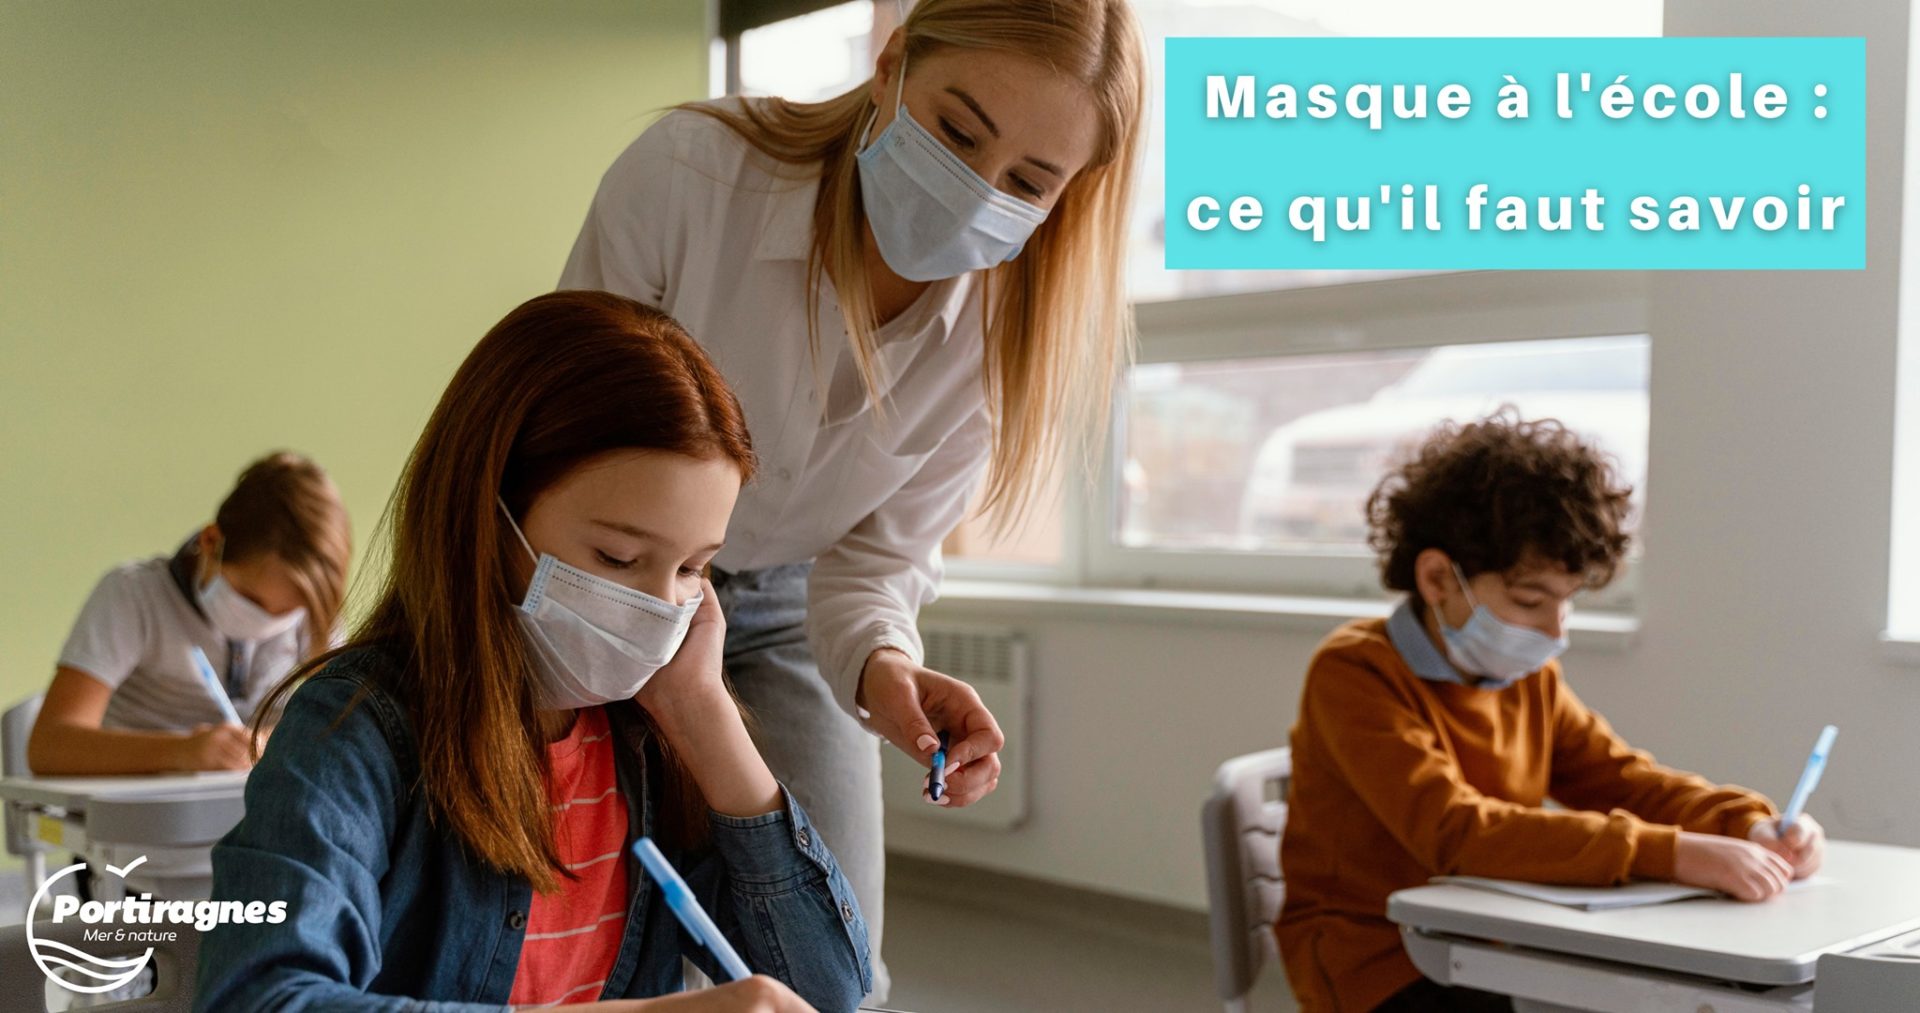 You are currently viewing Masque à l’école – Ce qu’il faut savoir